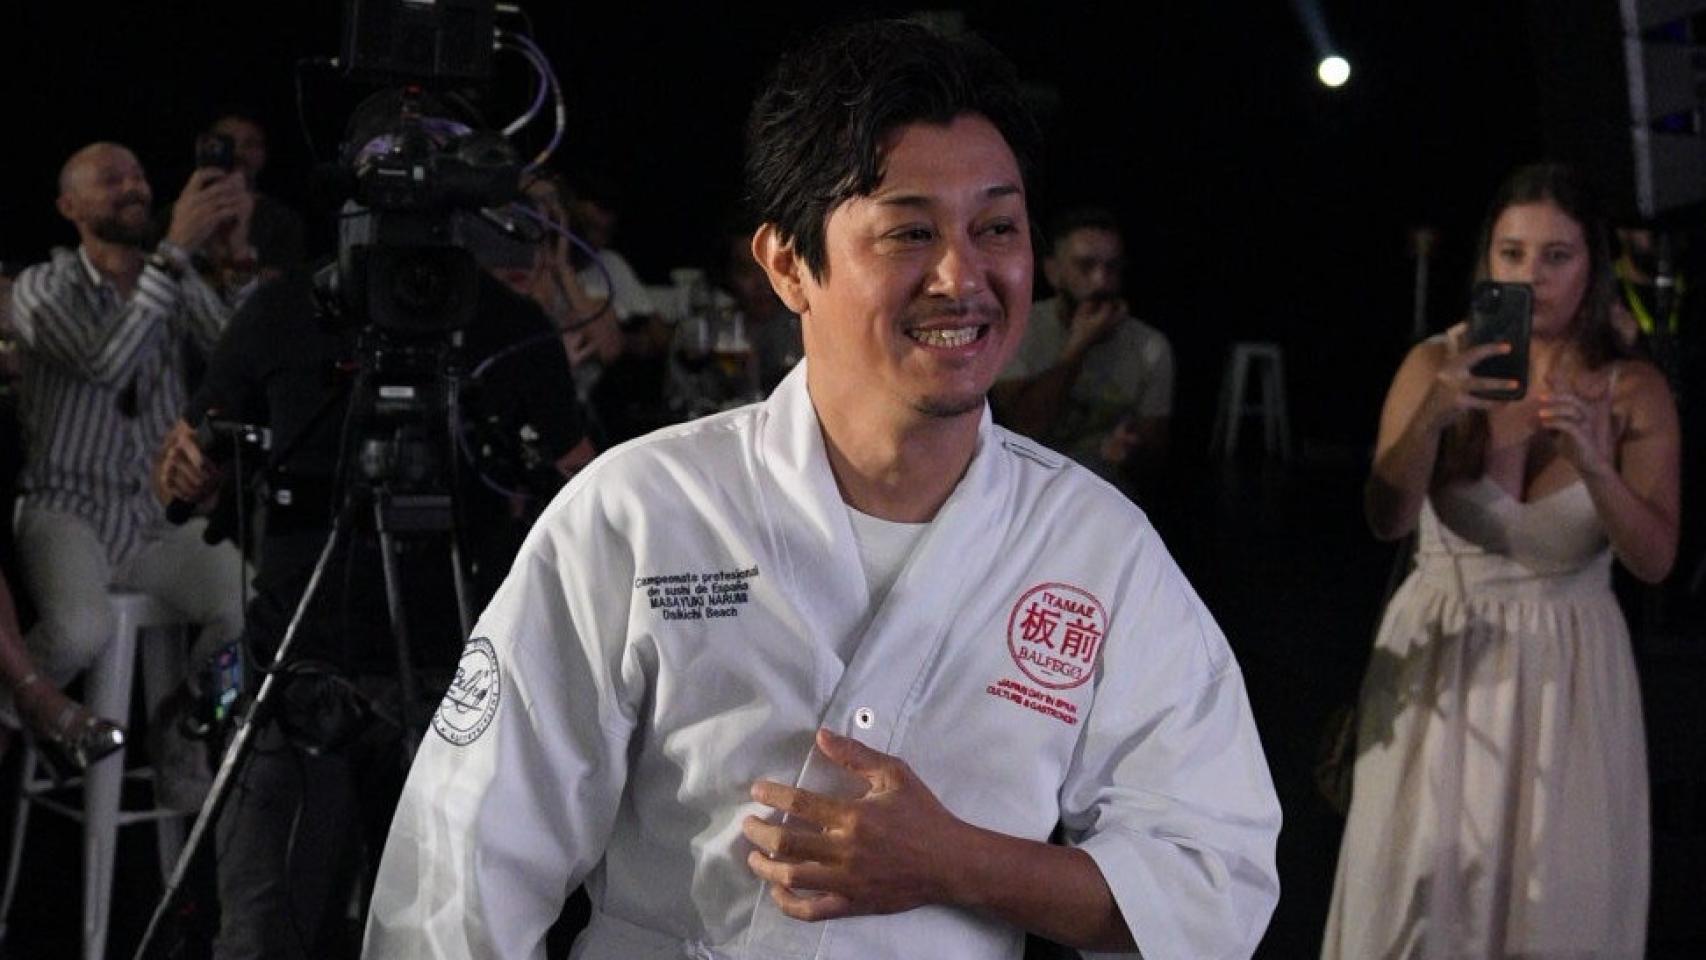 El mejor sushi está en Alicante: el chef Masayuki Narumi gana el campeonato de Itamae